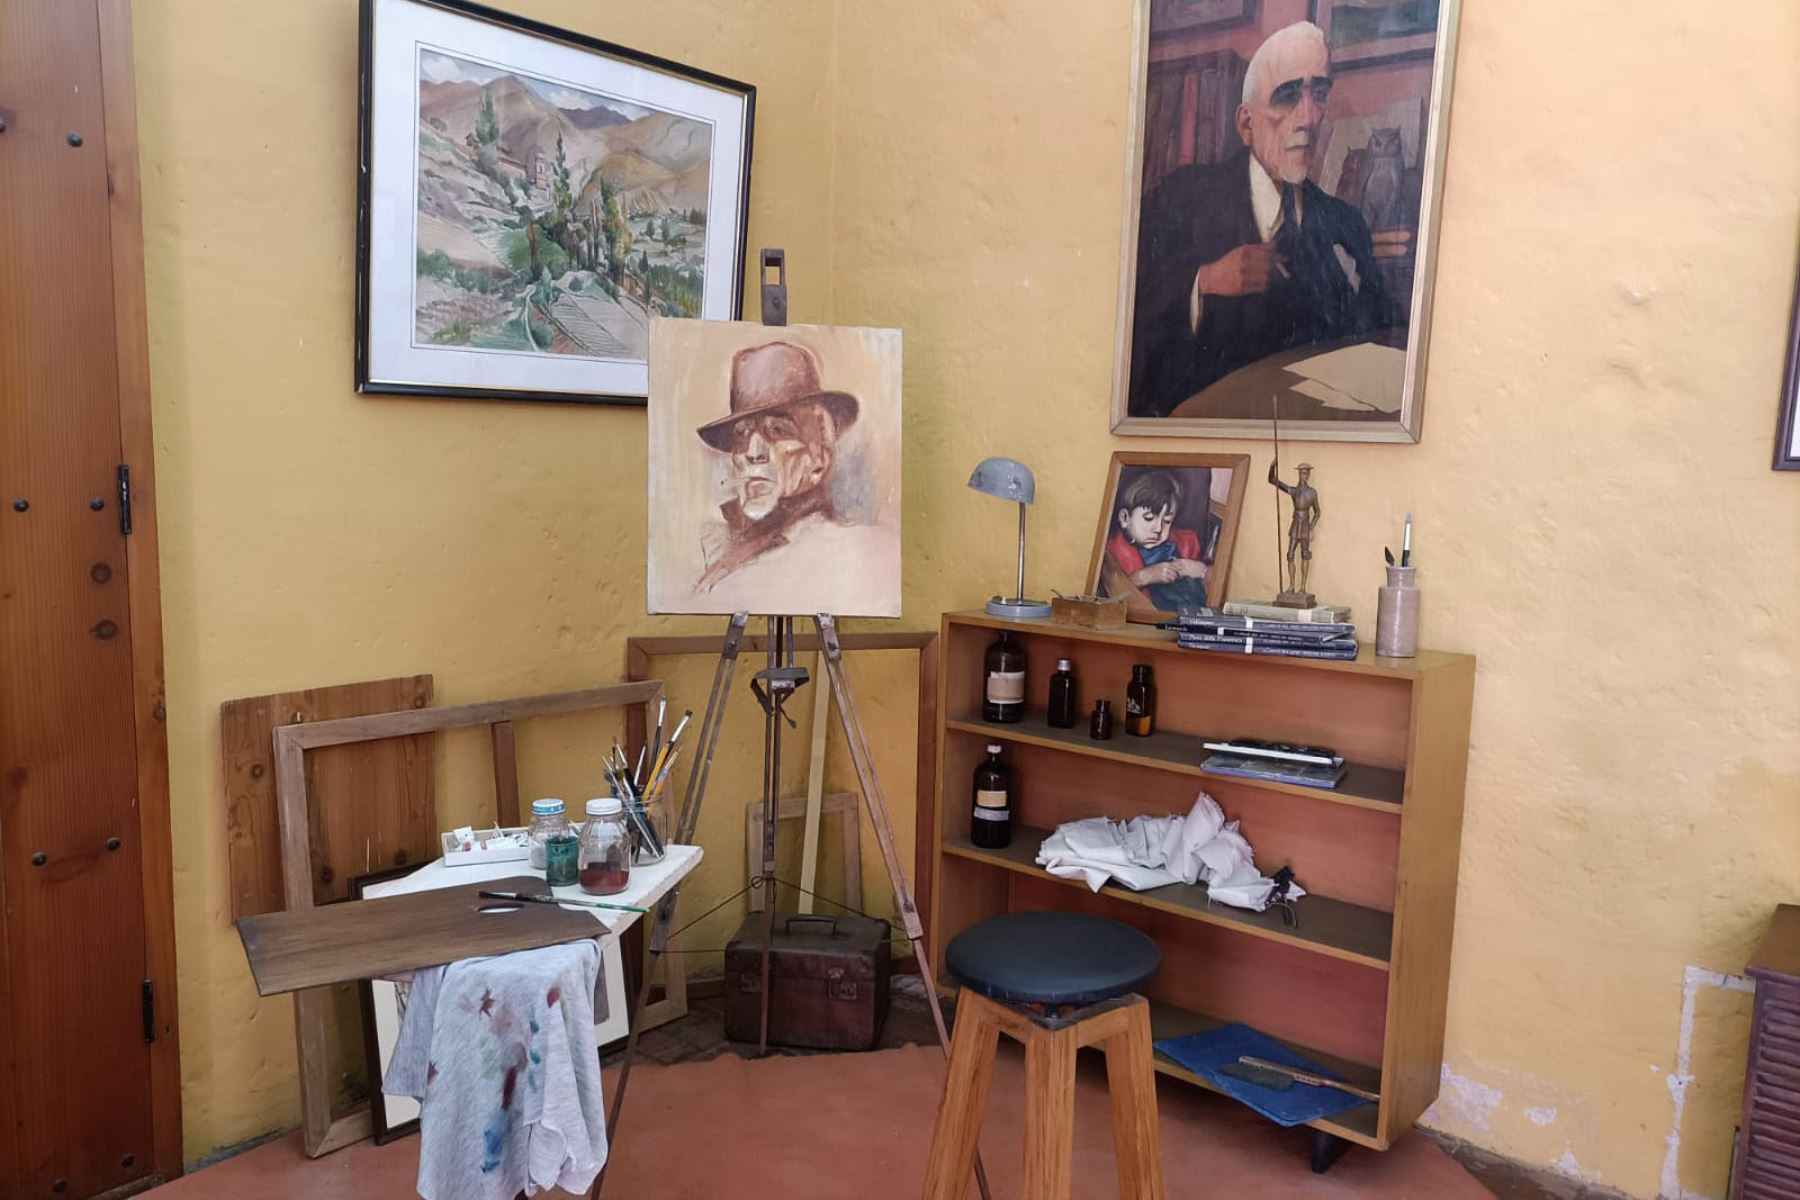 En el taller se puede encontrar el caballete y la paleta de pintura utilizados por el pintor arequipeño Teodoro Núñez Ureta. Foto: ANDINA/Cortesía Rocío Méndez